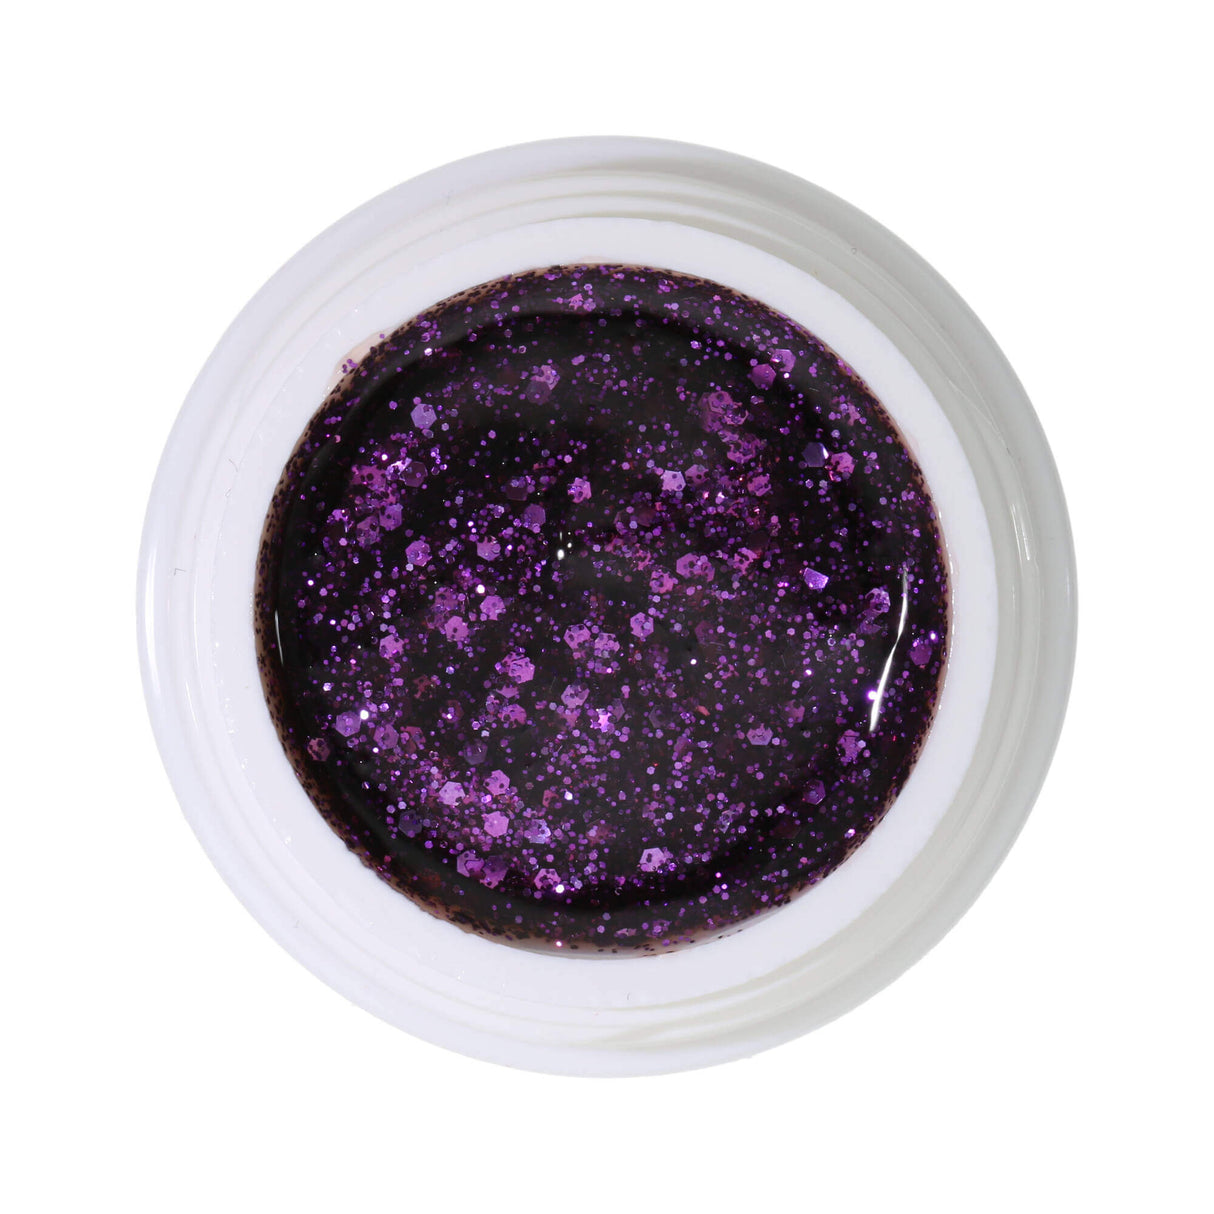 #296 Premium-GLITTER Color Gel 5ml Klassisches violettes Glittergel dominiert von groben Glitterpartikeln